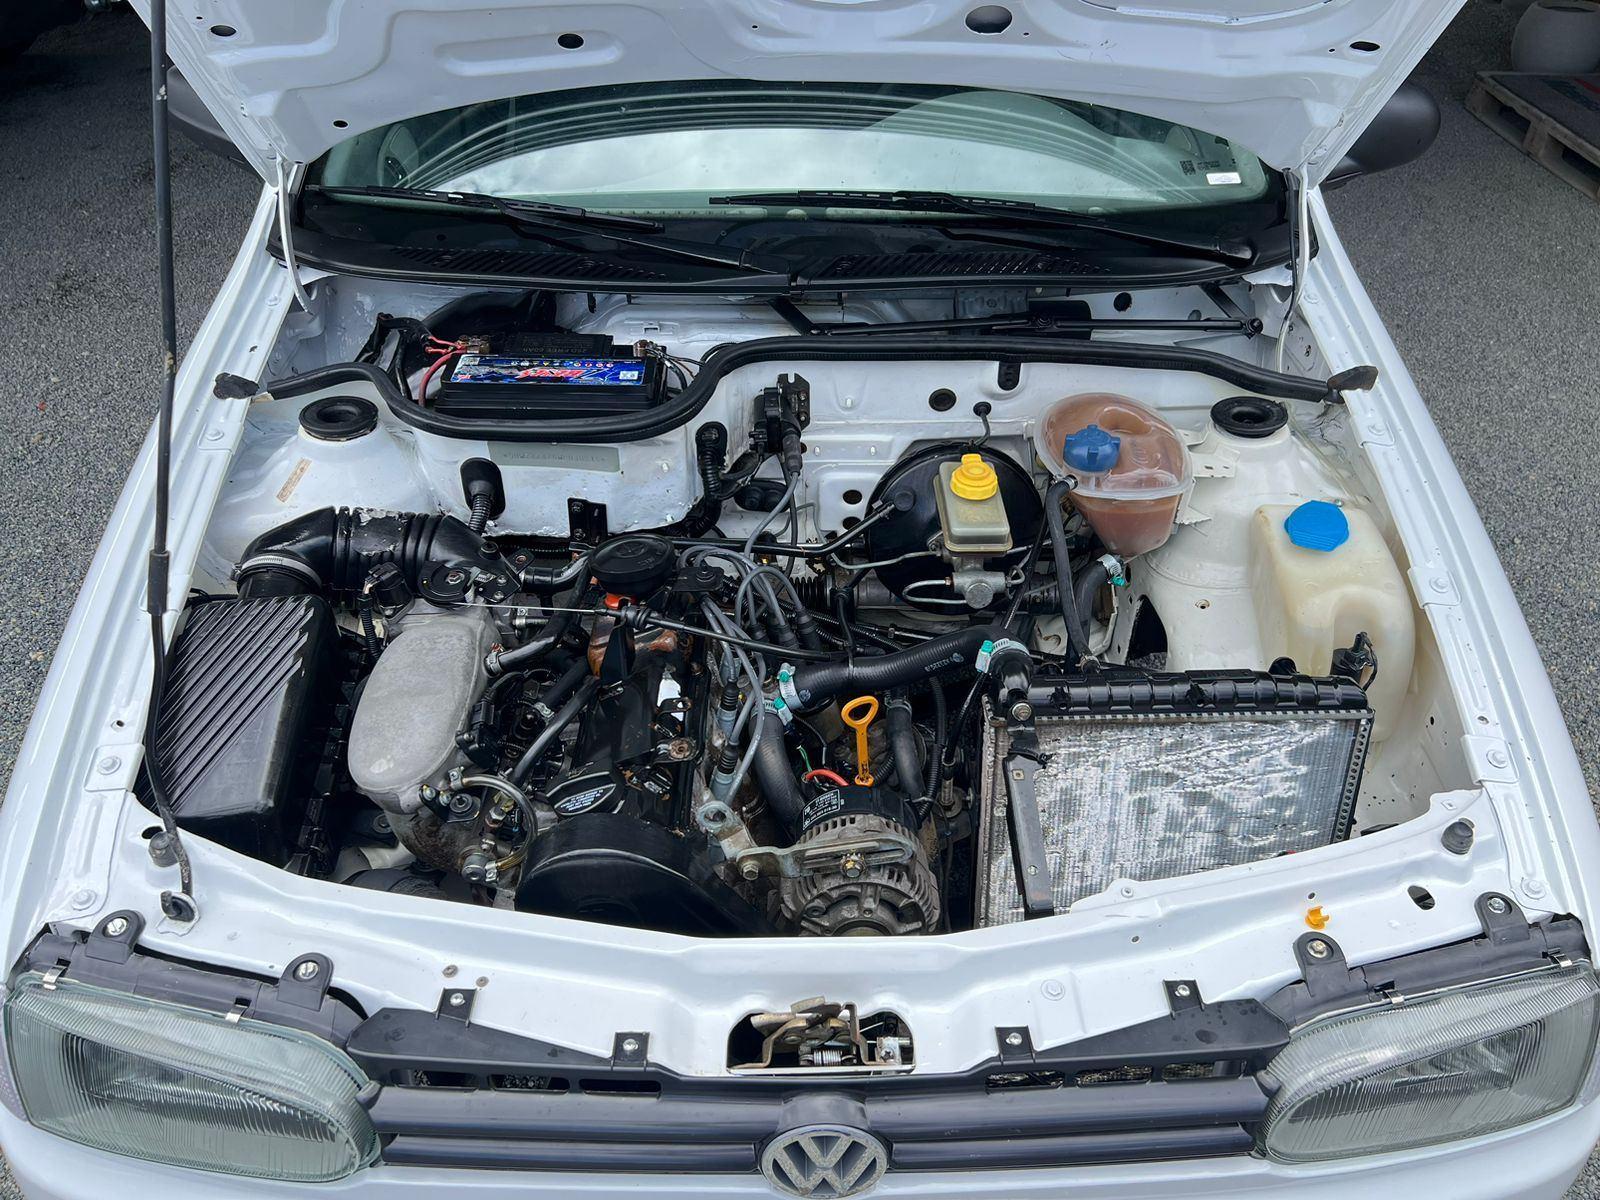 Volkswagen Saveiro a partir de 2008 1.6 Cl 8v 2p em SC